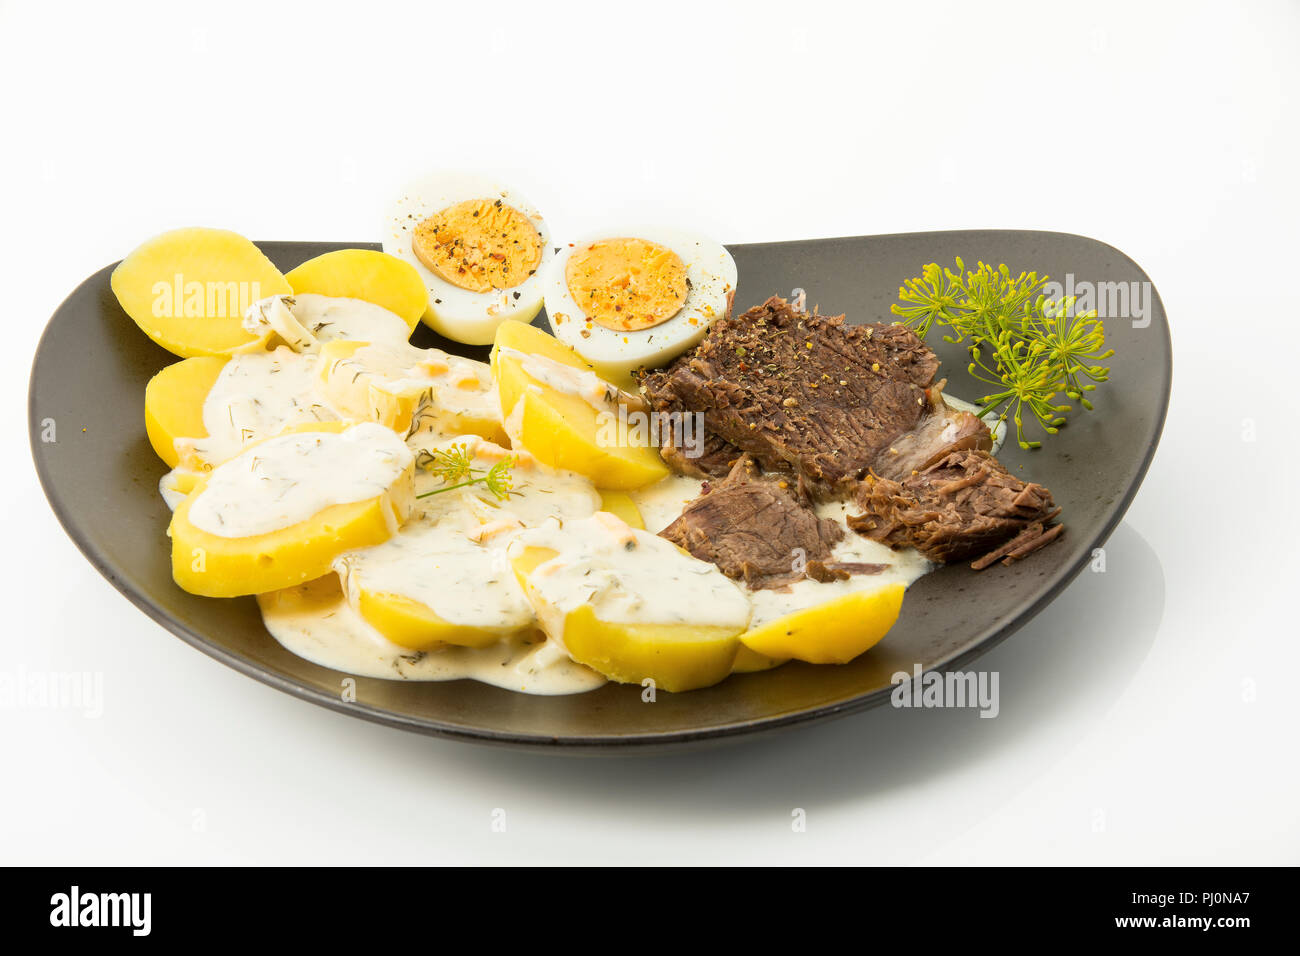 Dillkartoffeln, gekochte Kartoffeln, Dill-Rahm-Sauce, gekochte Eier und Rindfleisch Stock Photo